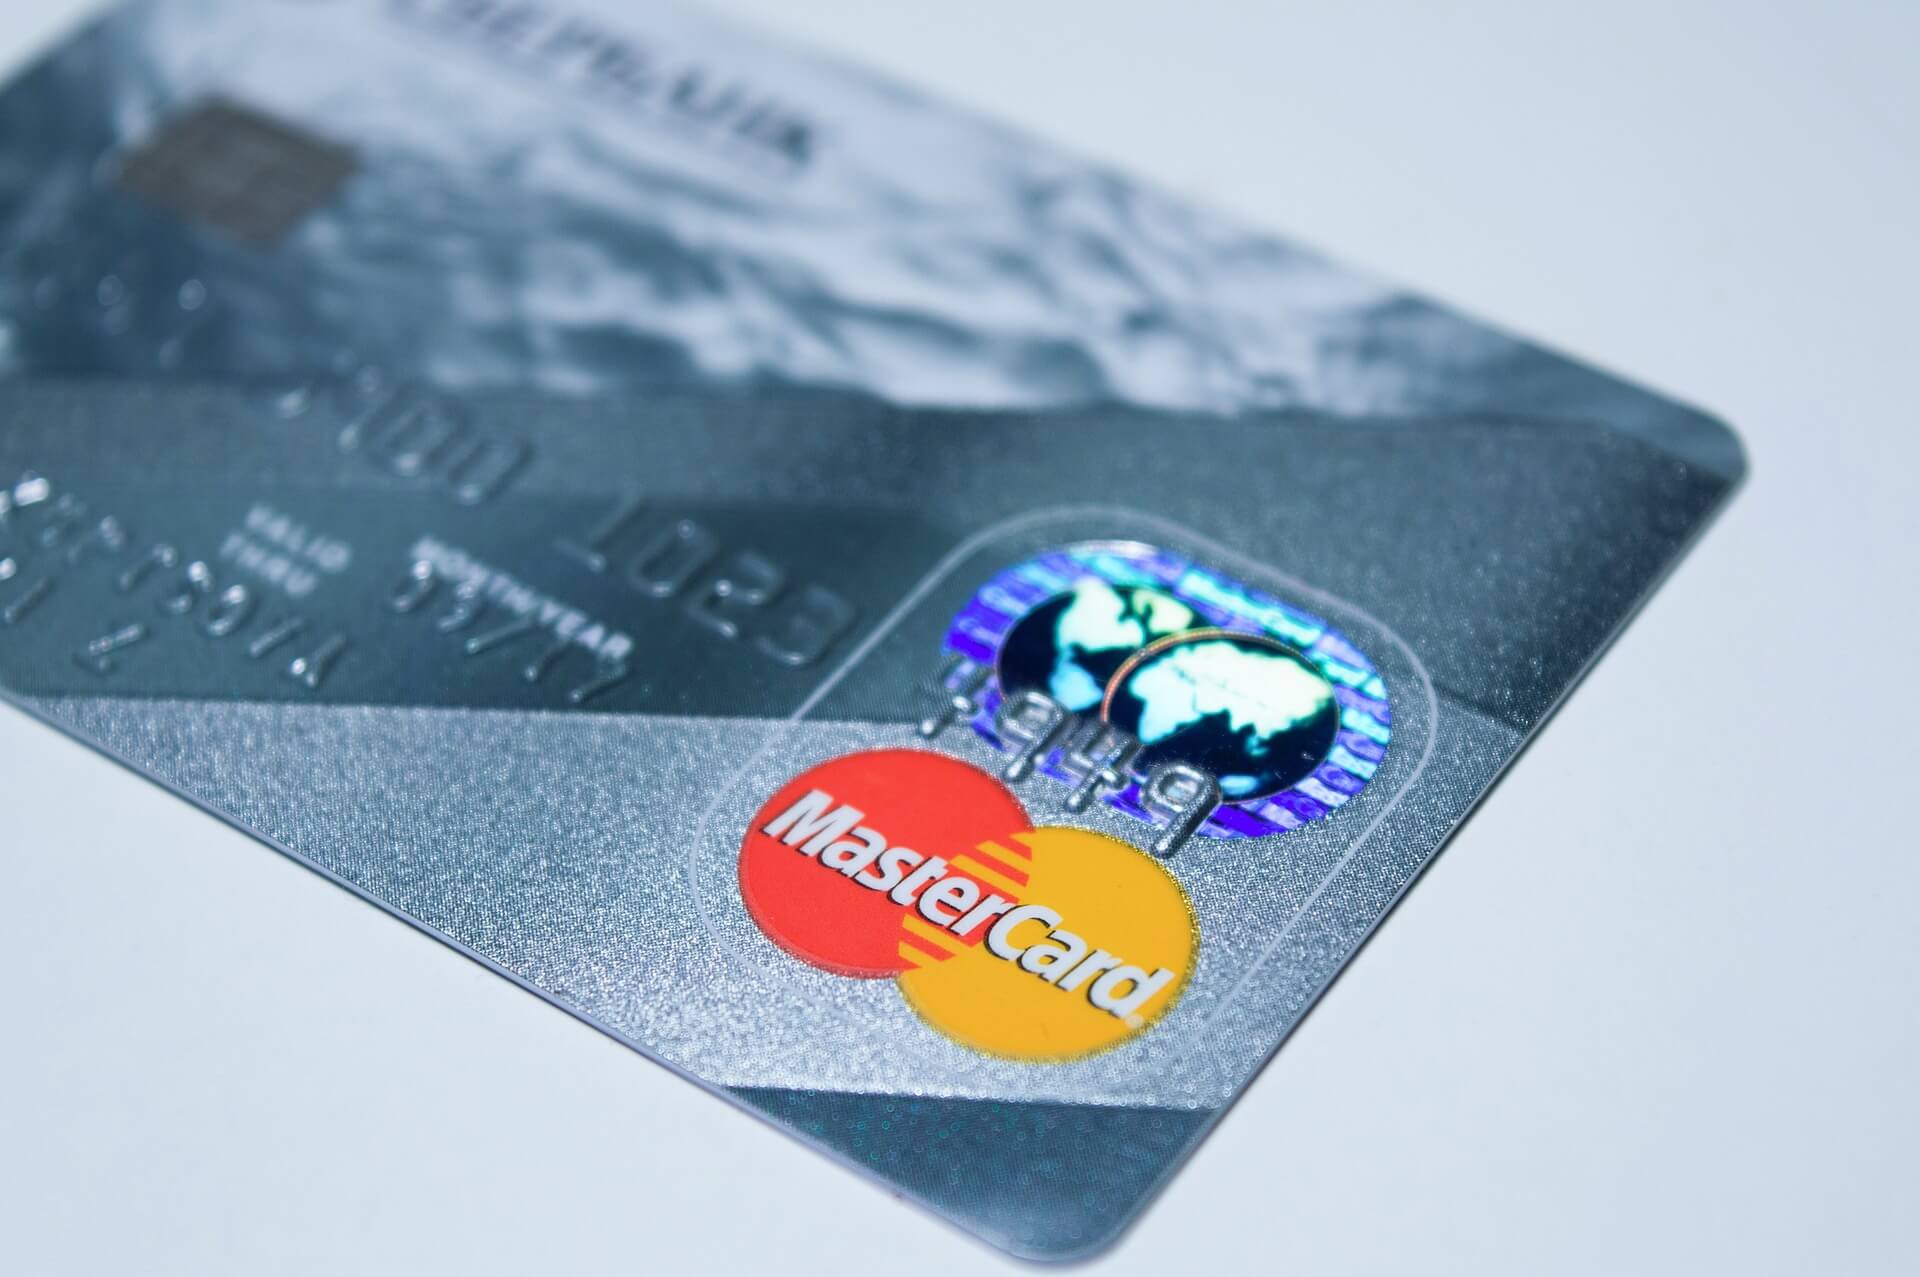 현대카드 M포인트 현금전환 (상품권 교환 등 기타 활용 방법)